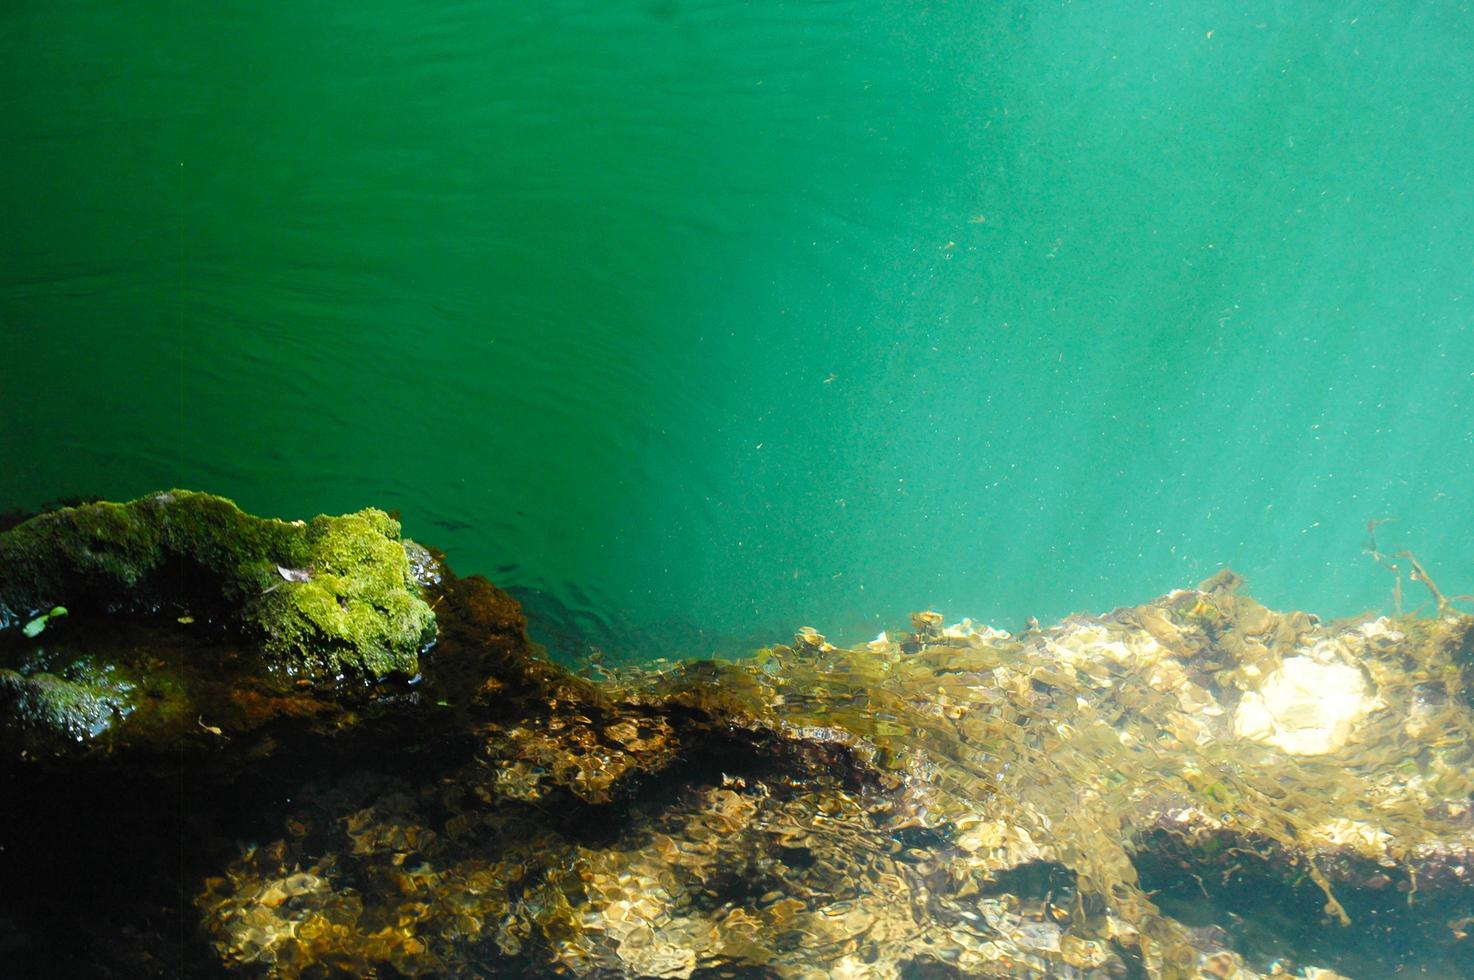 mundo subaquático no mar com água transparente azul límpida foto